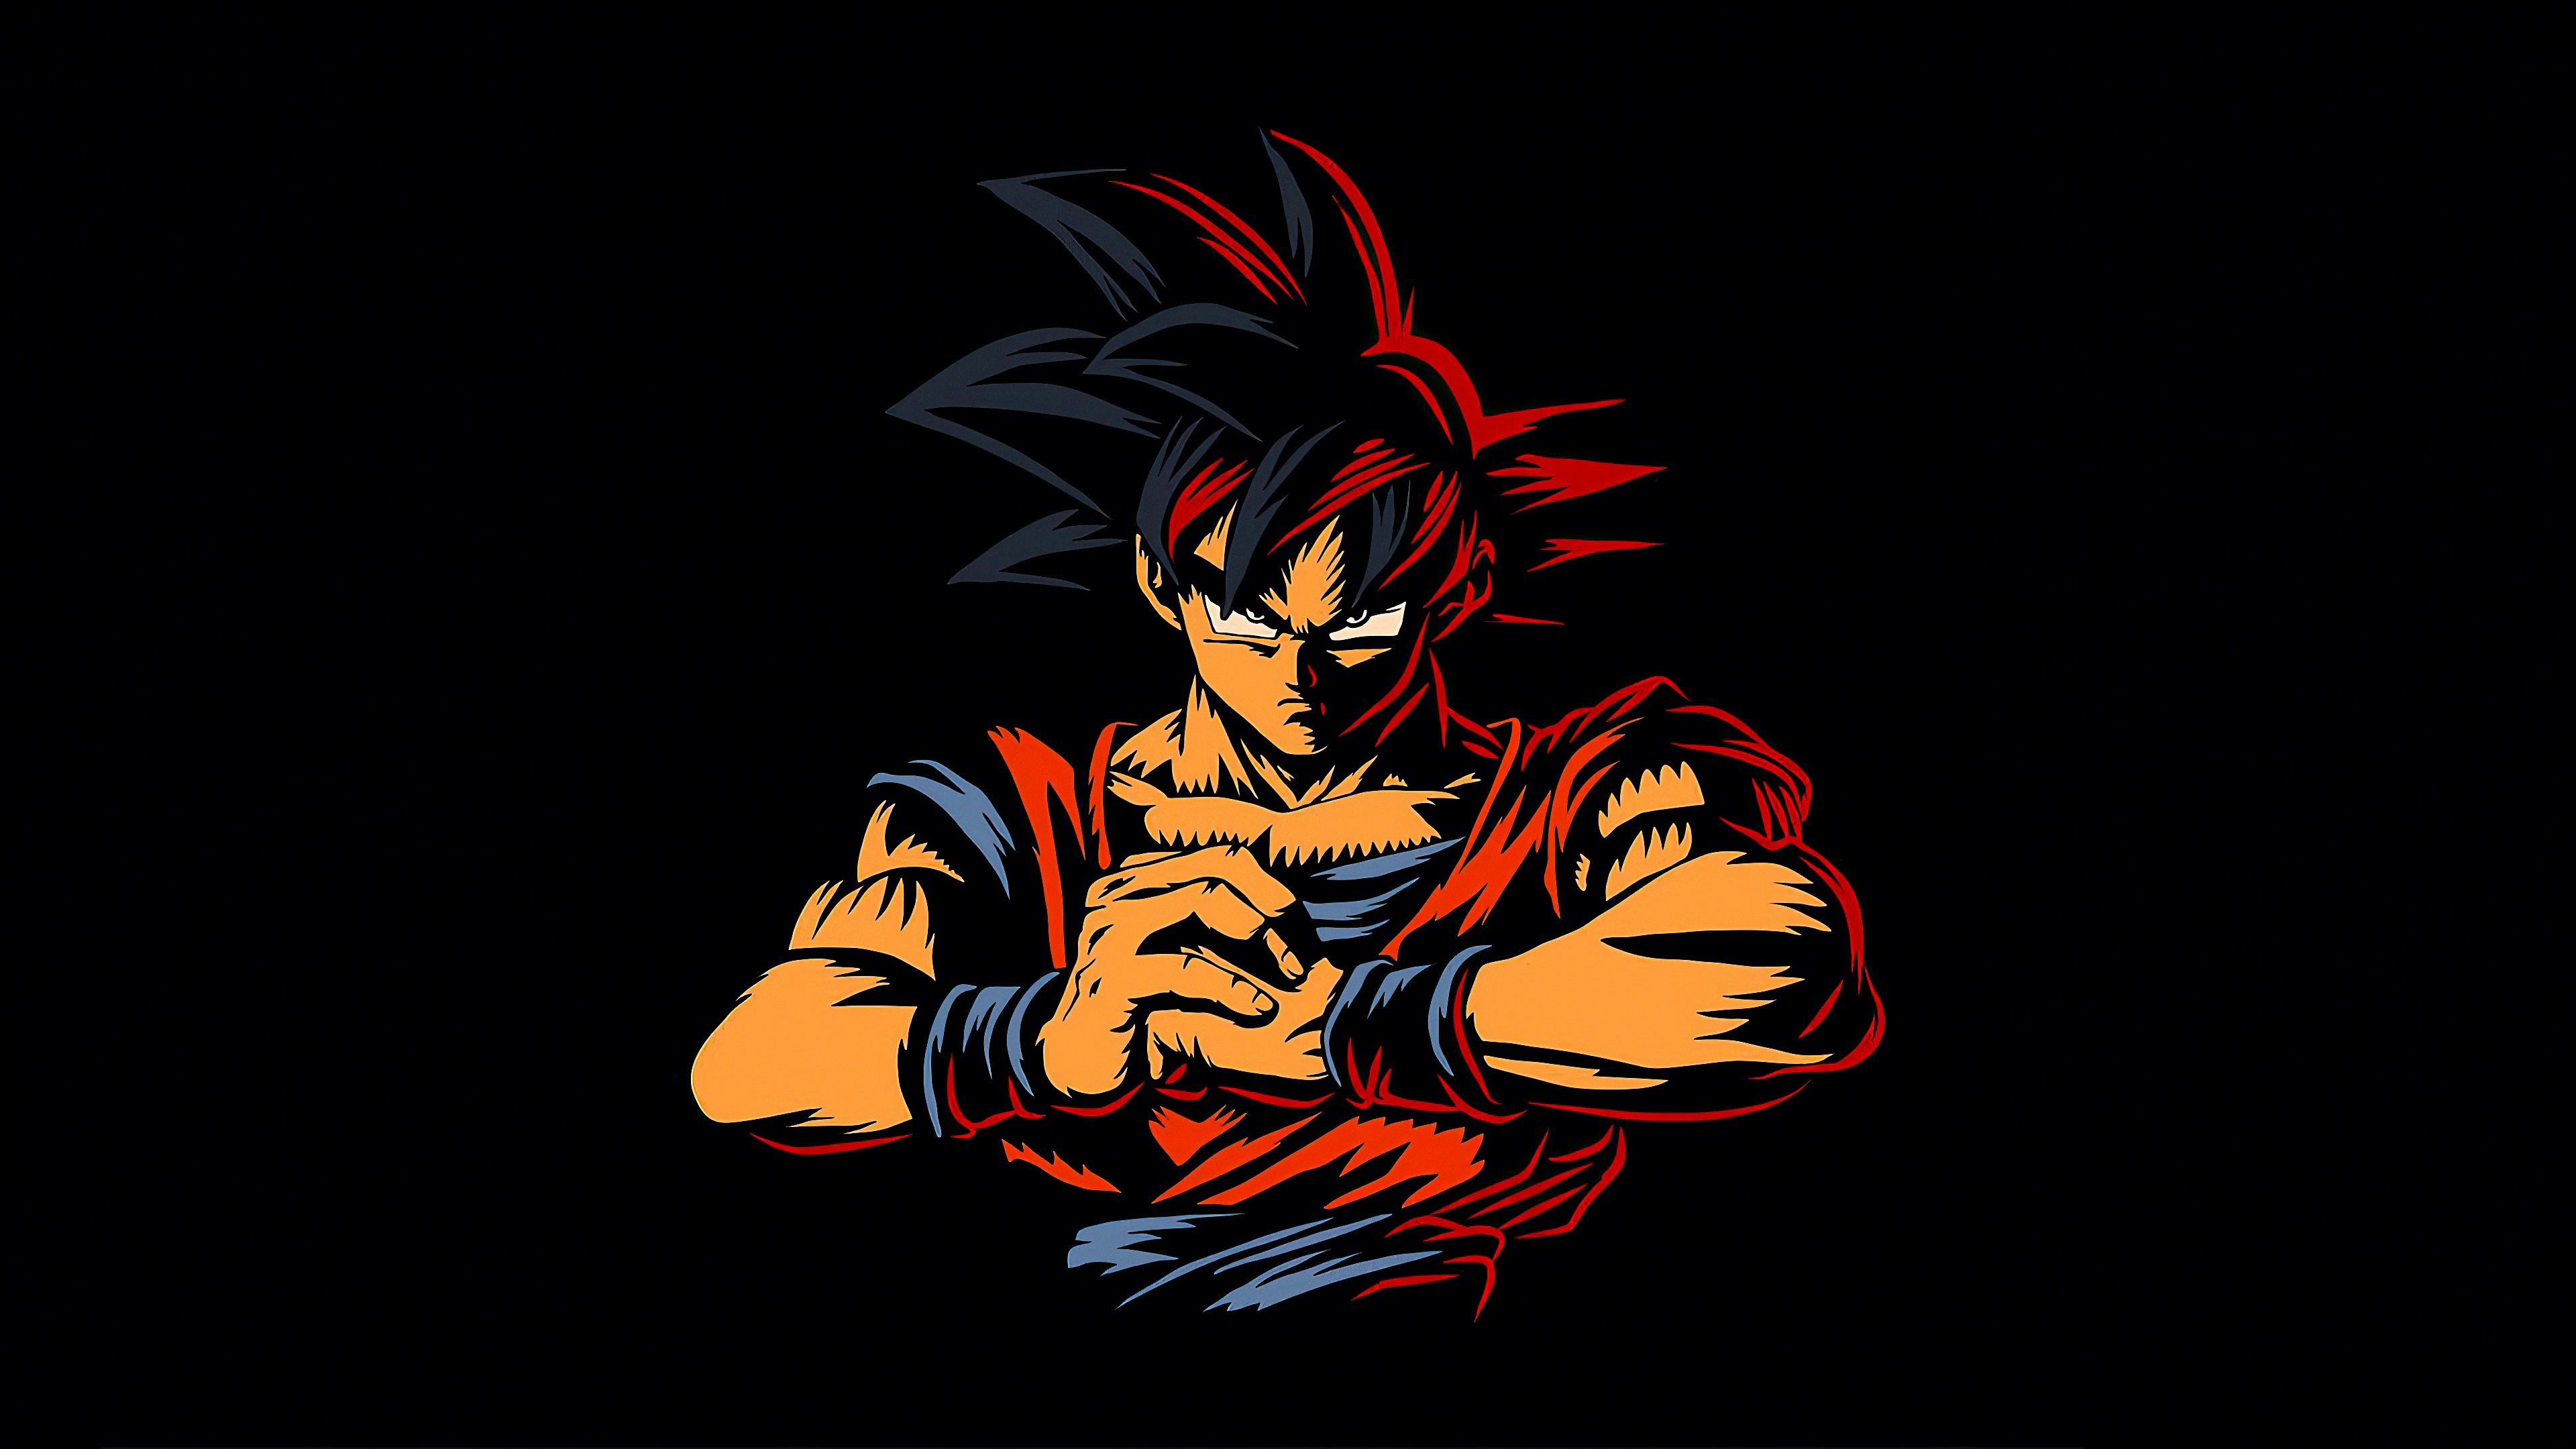 Fondos de pantalla Goku de Dragon Ball